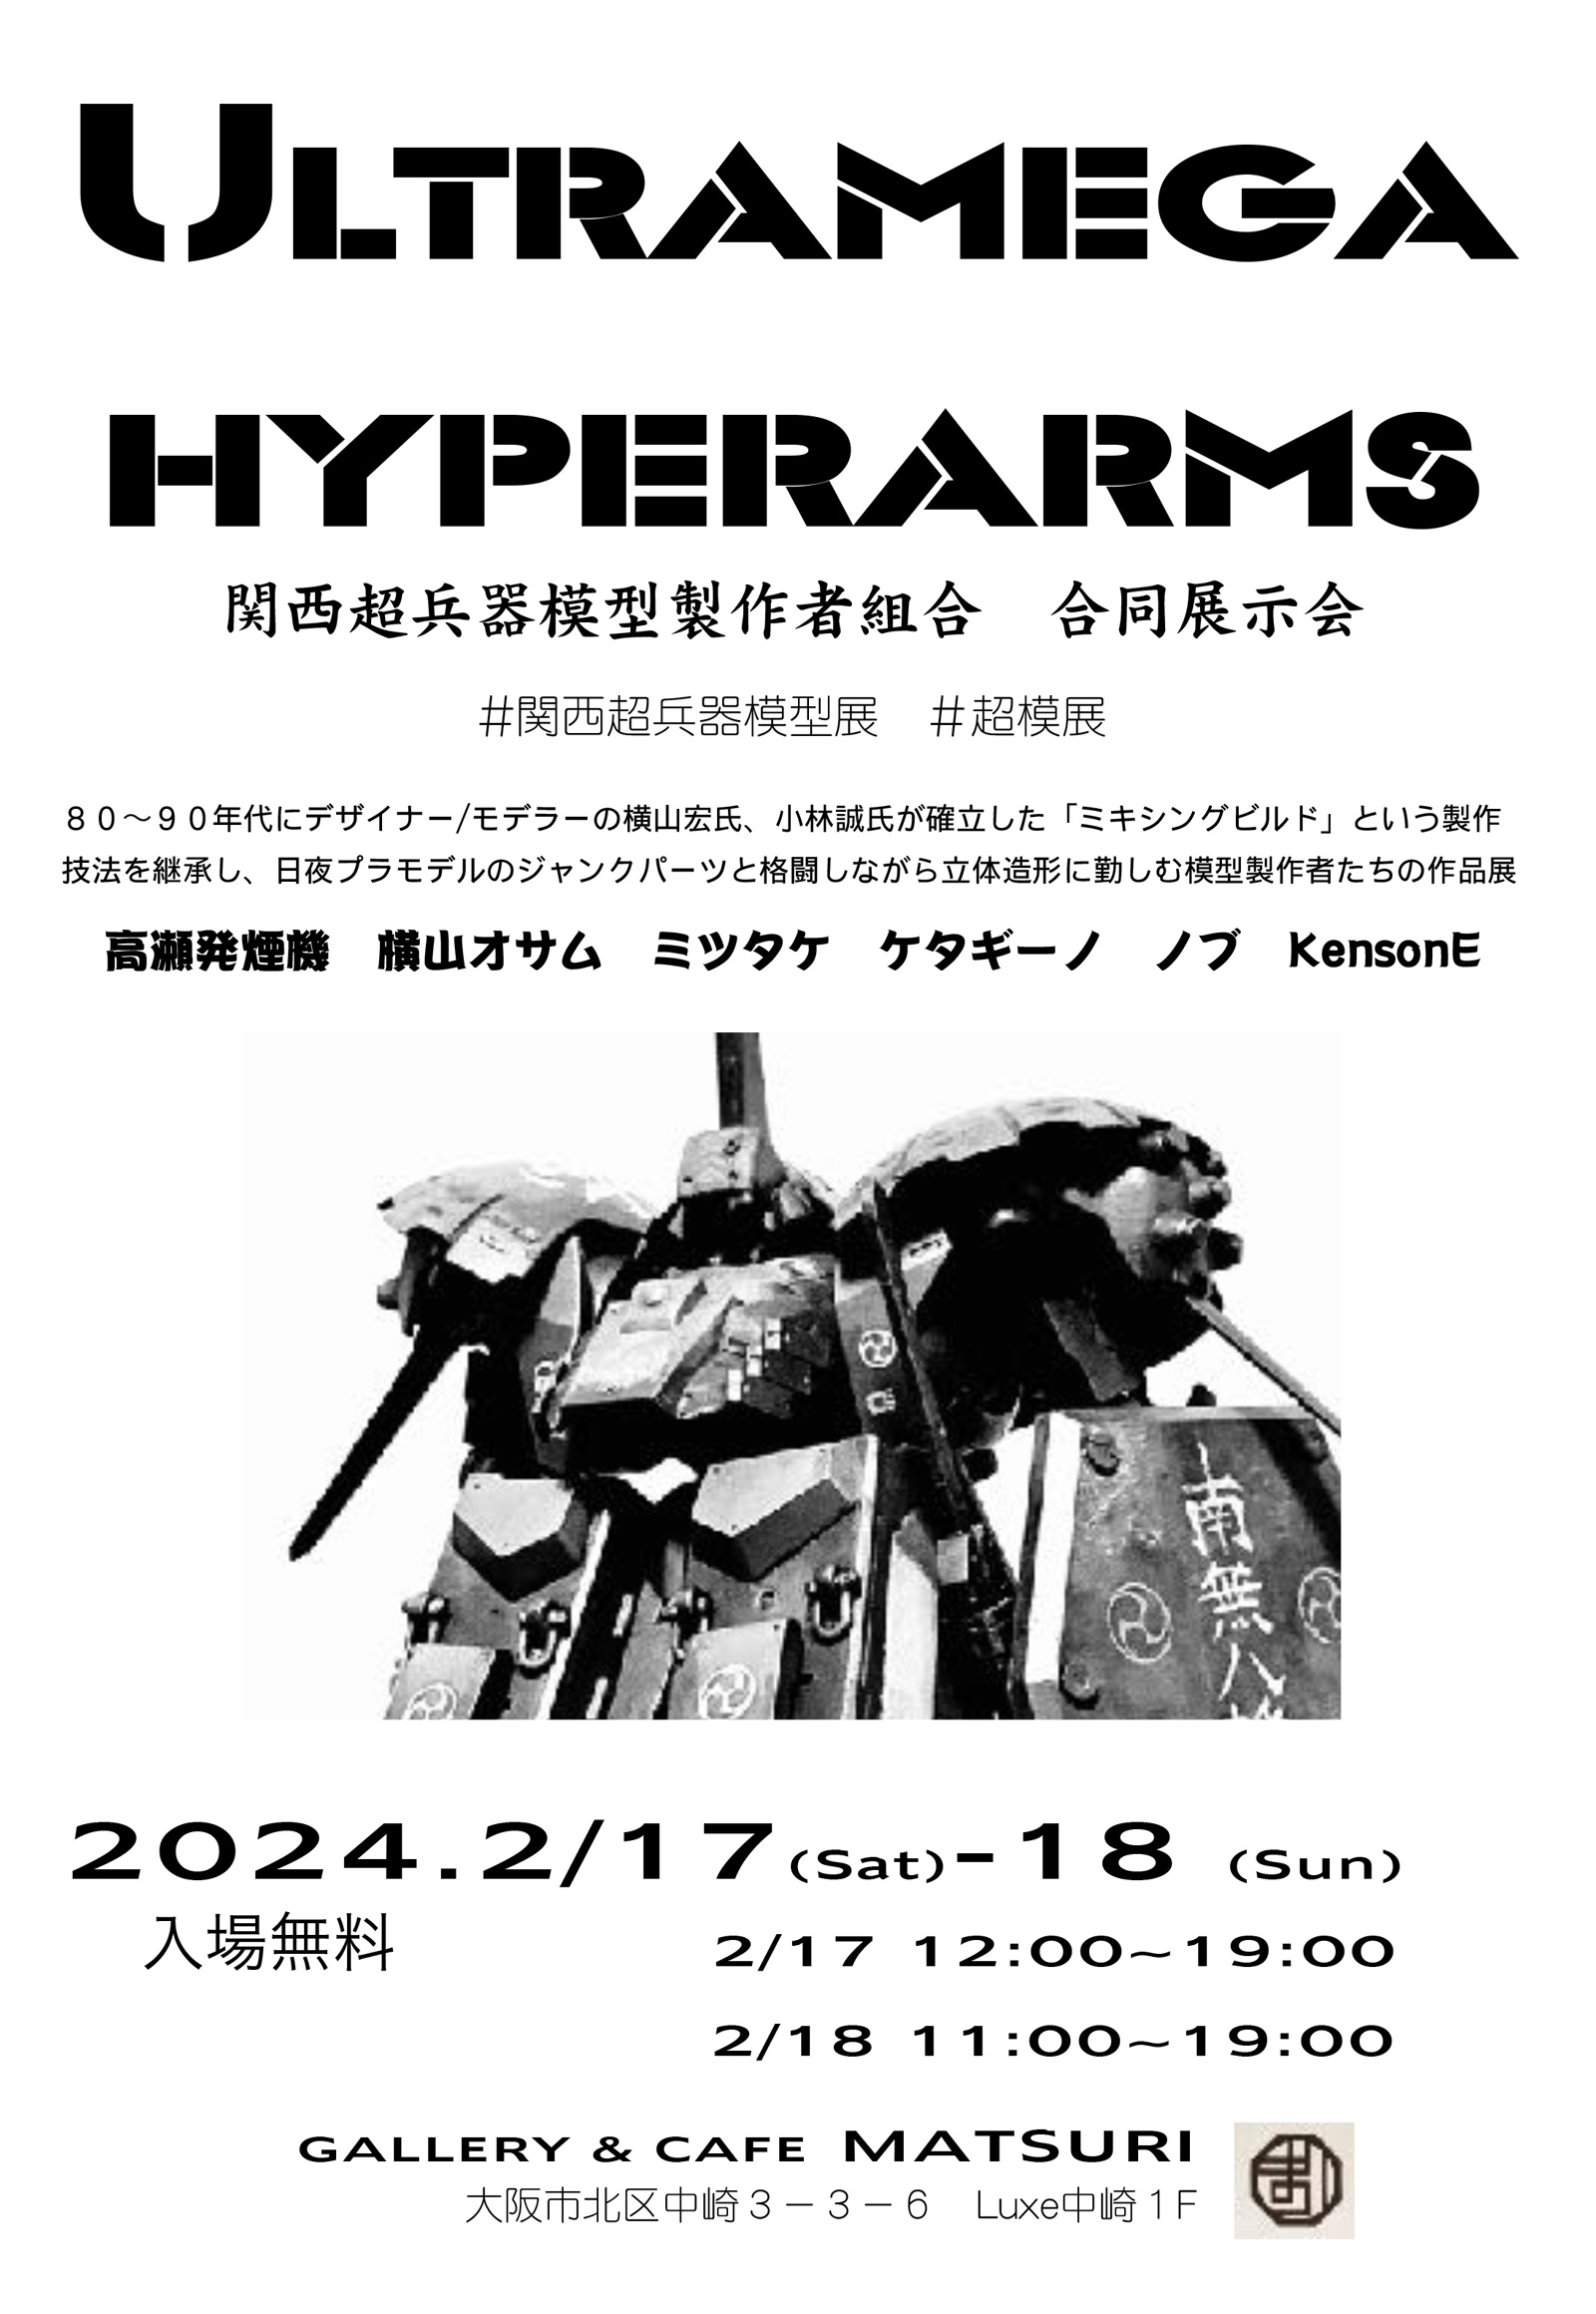 Ultramega hyperarms（関西超兵器模型製作者組合 合同展示会）